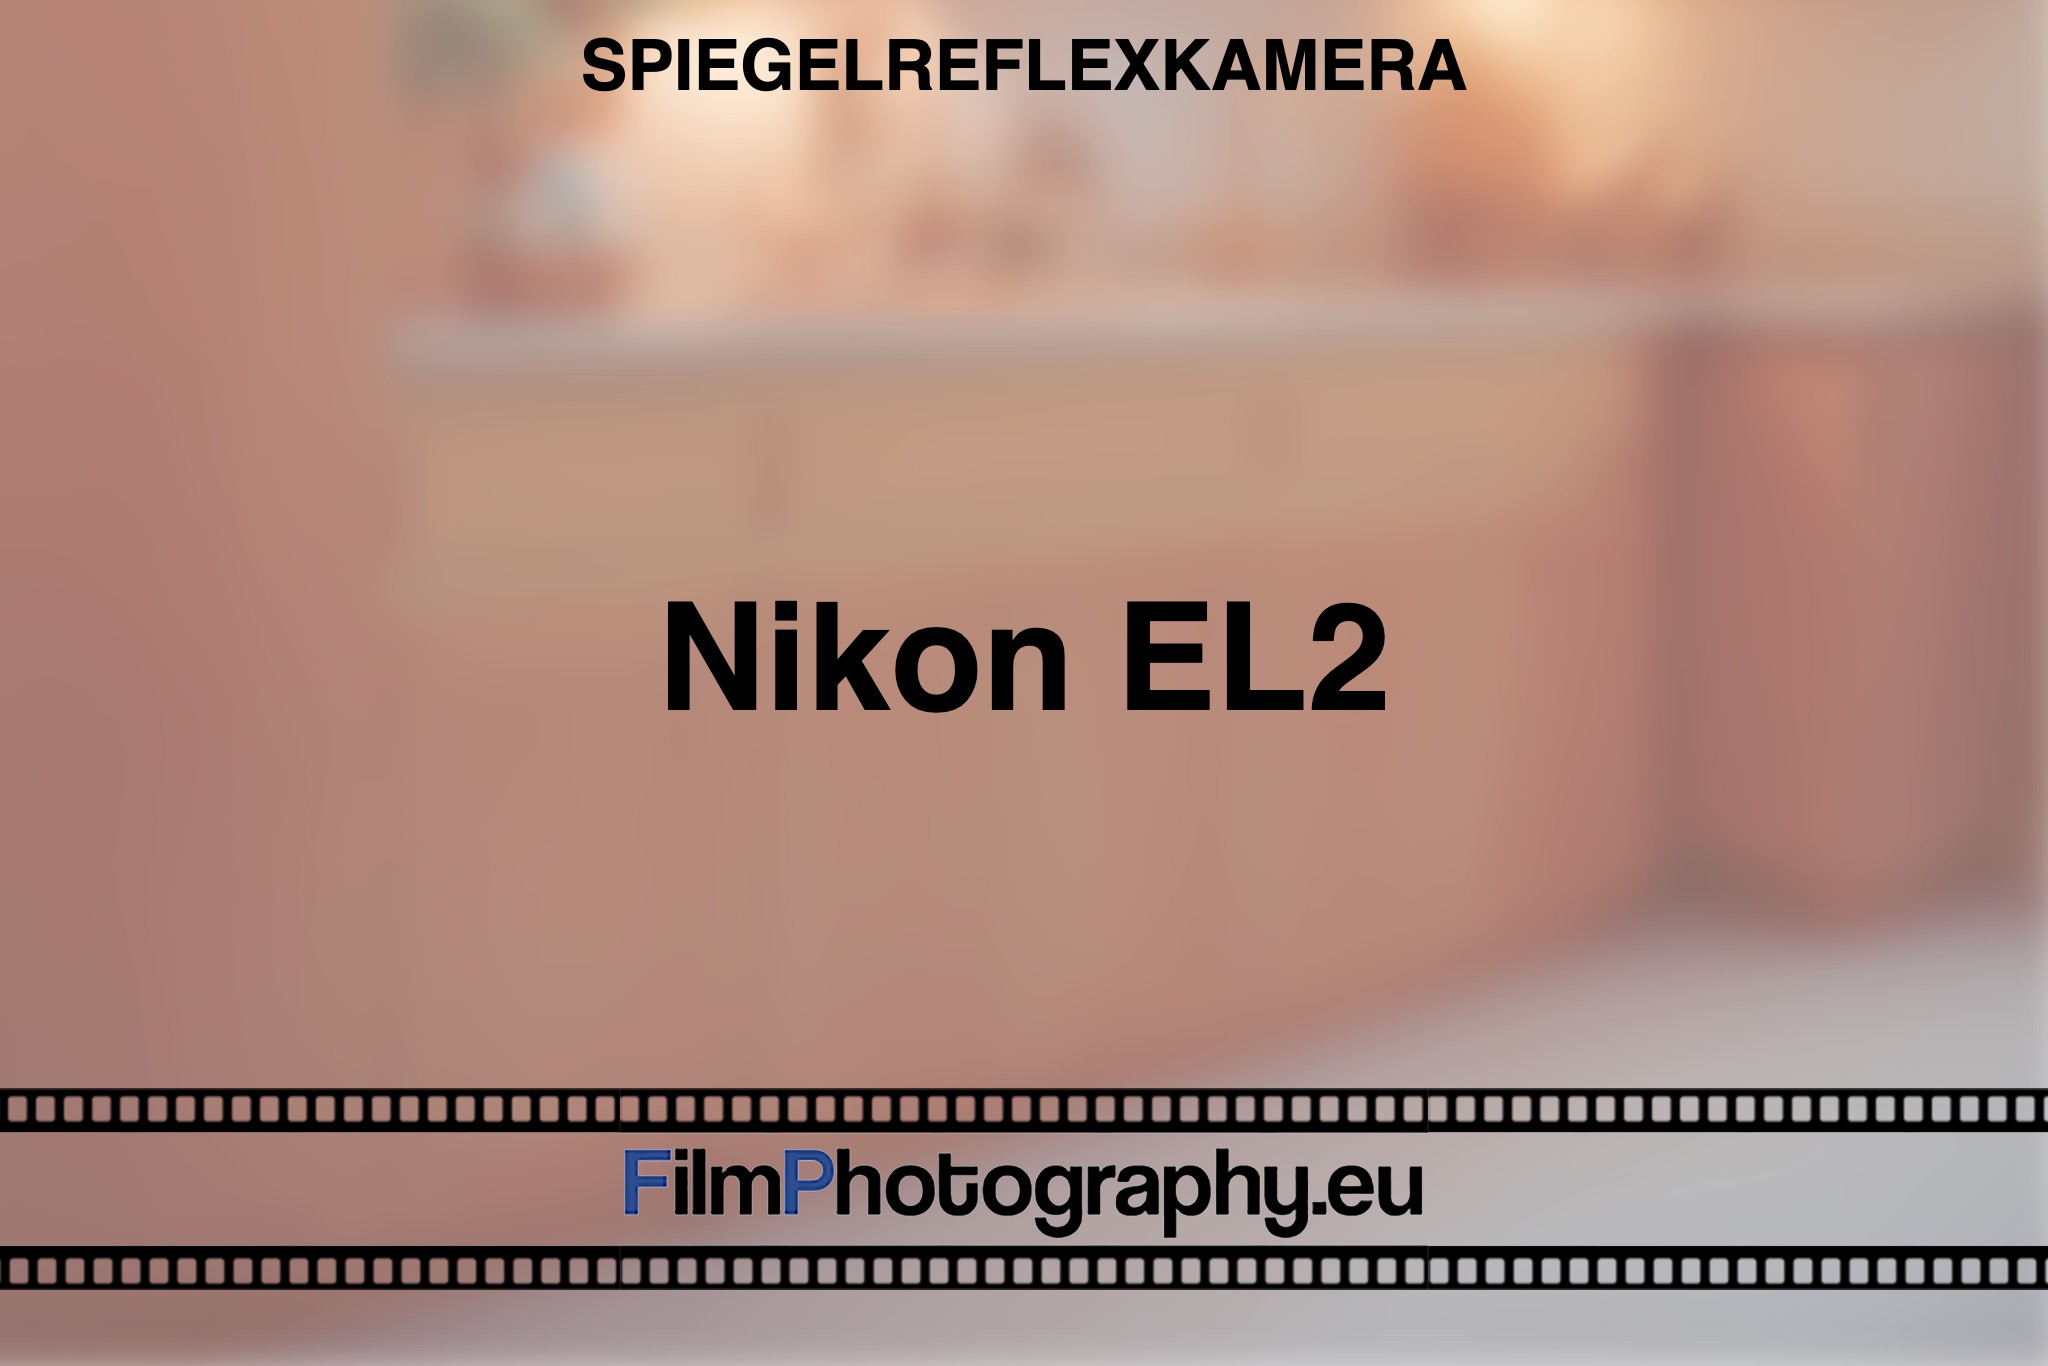 nikon-el2-spiegelreflexkamera-bnv